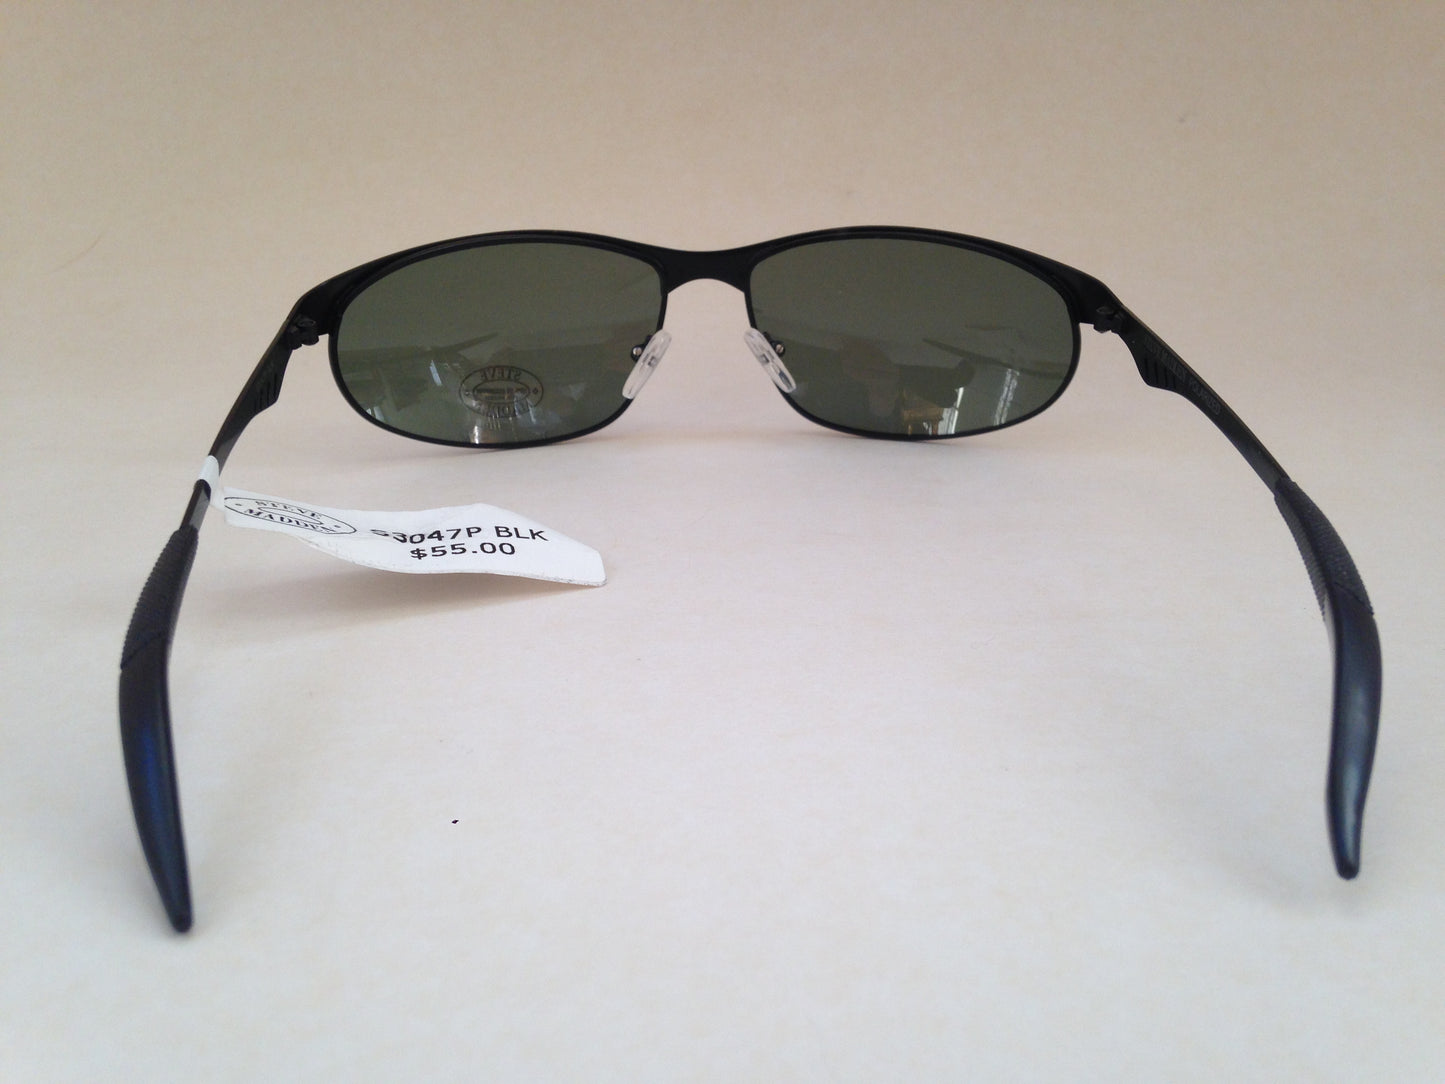 Steve Madden Sunglasses Polarized Sport Black Metal Frame Green Lens S3047P Blk - Sunglasses